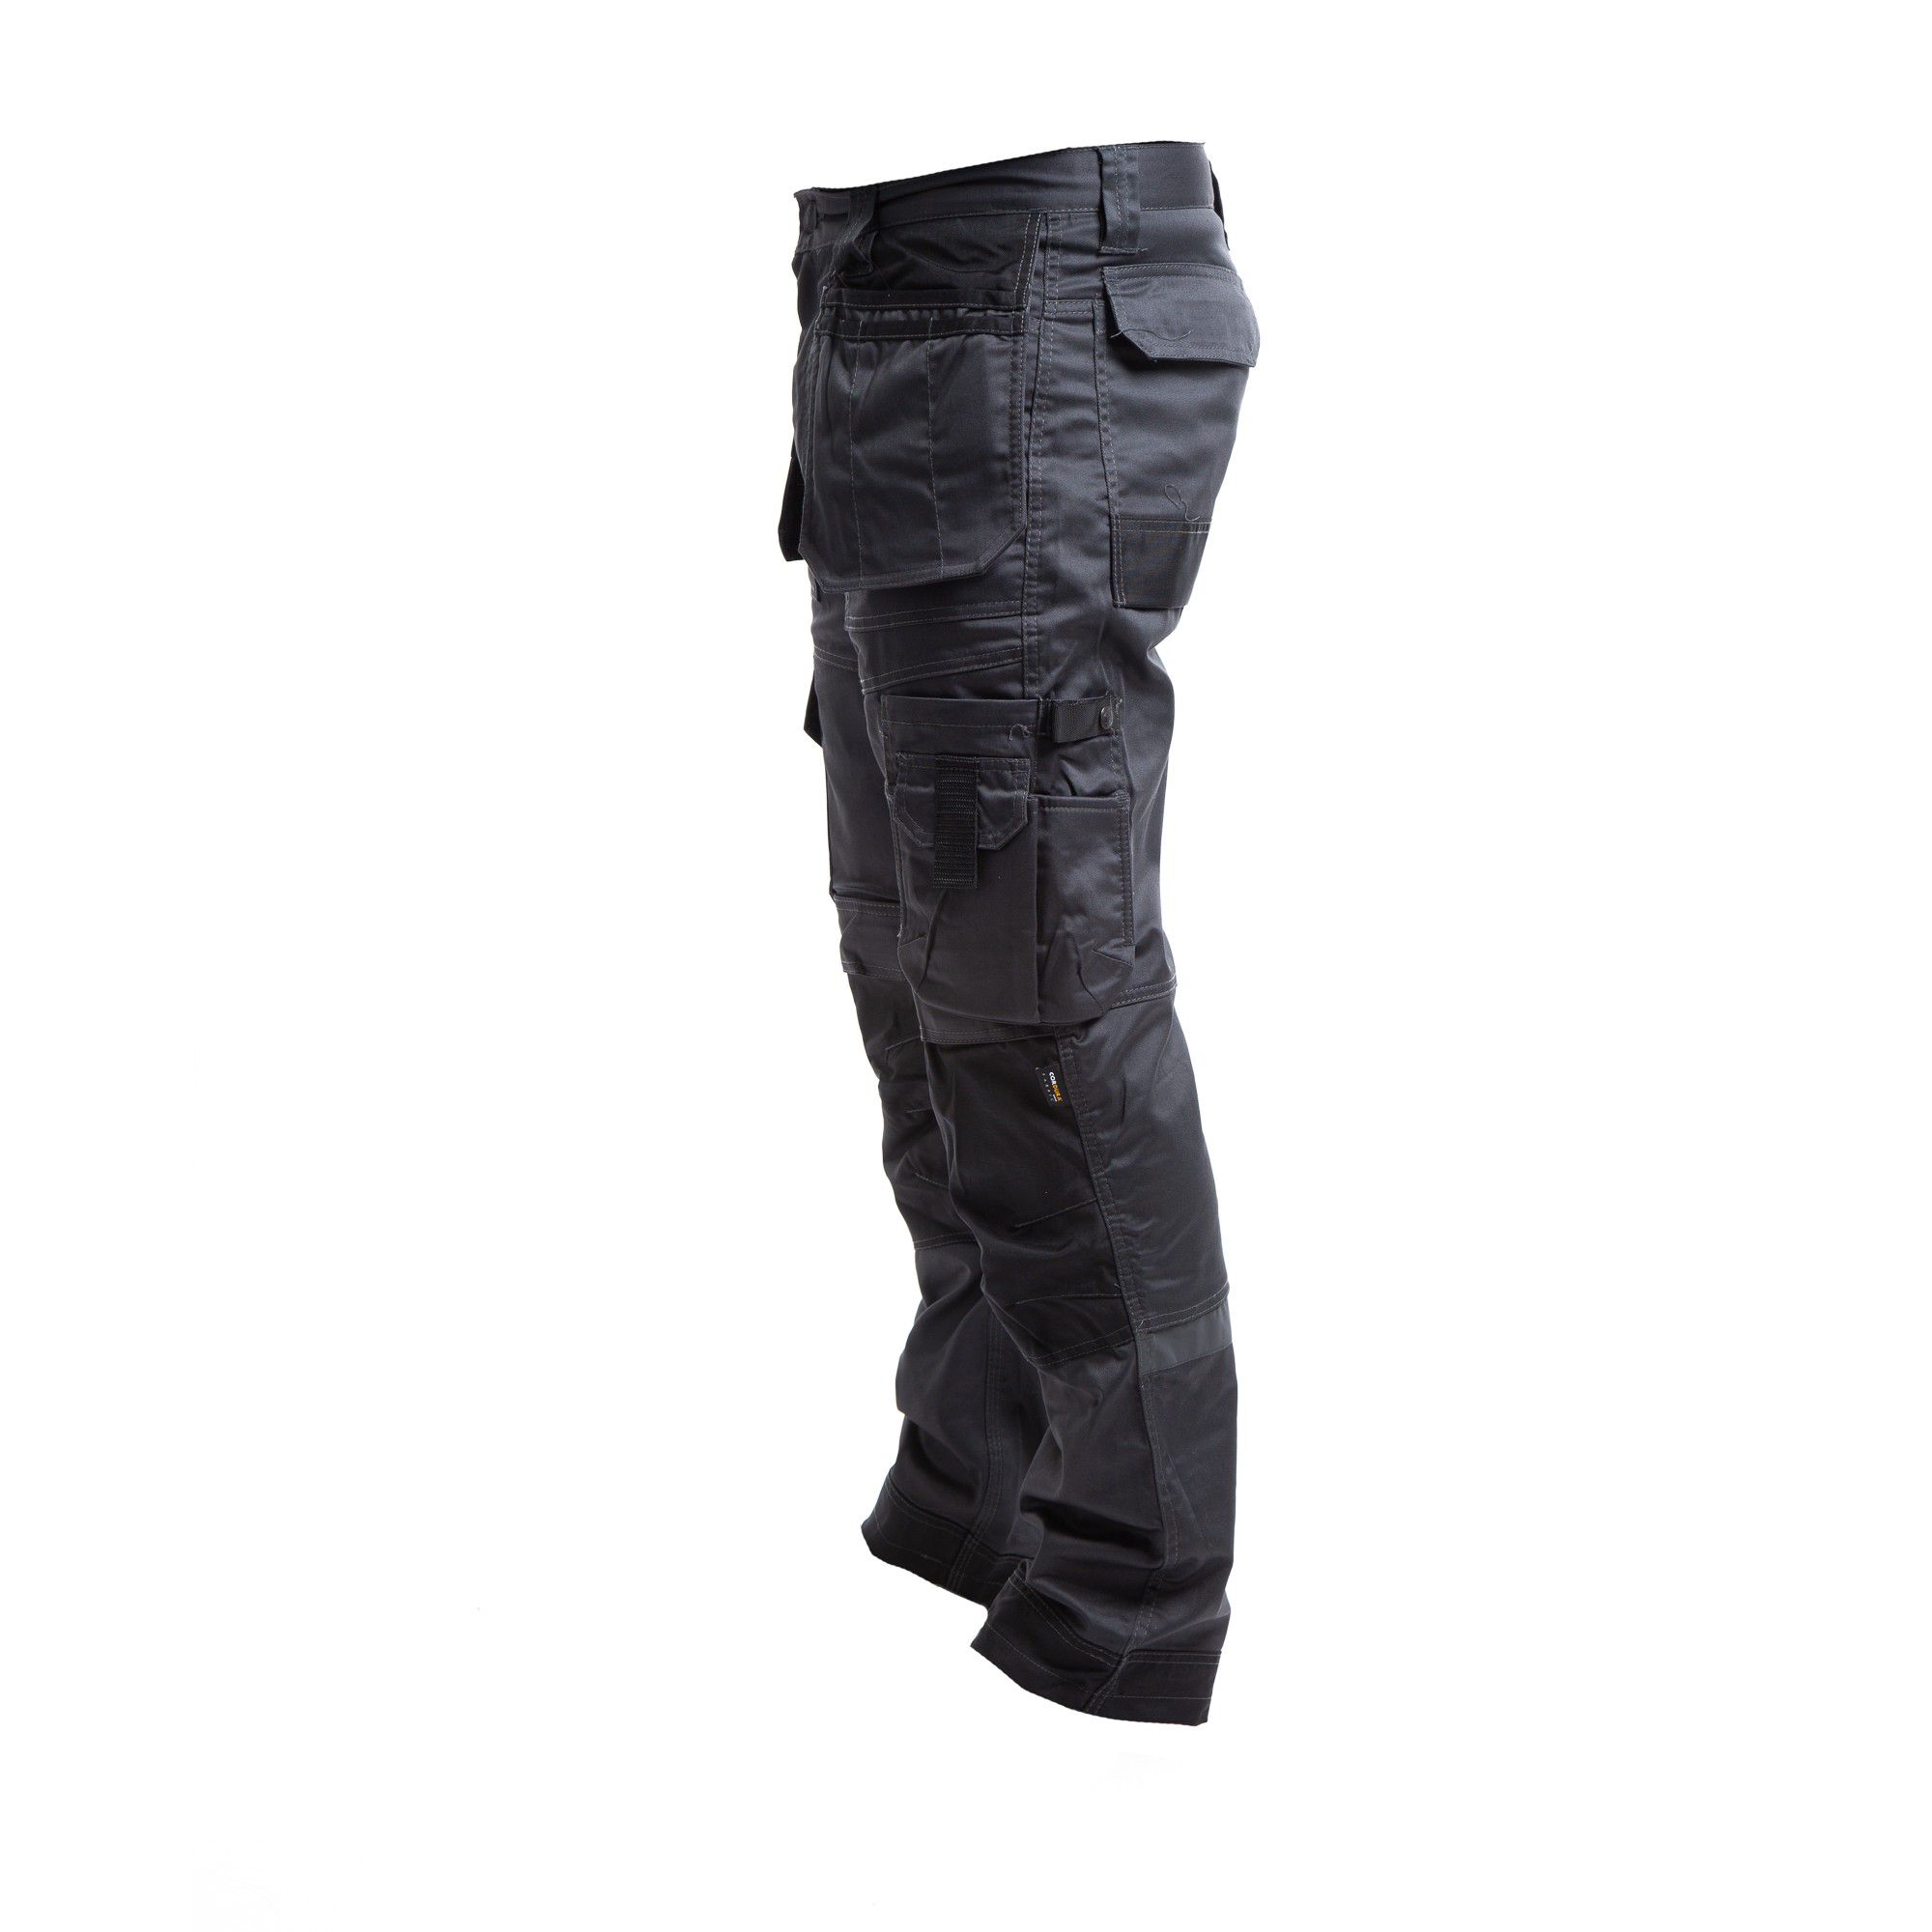 Apache Industrial Wear Grey & black Men's Holster pocket trousers, W36" L31"